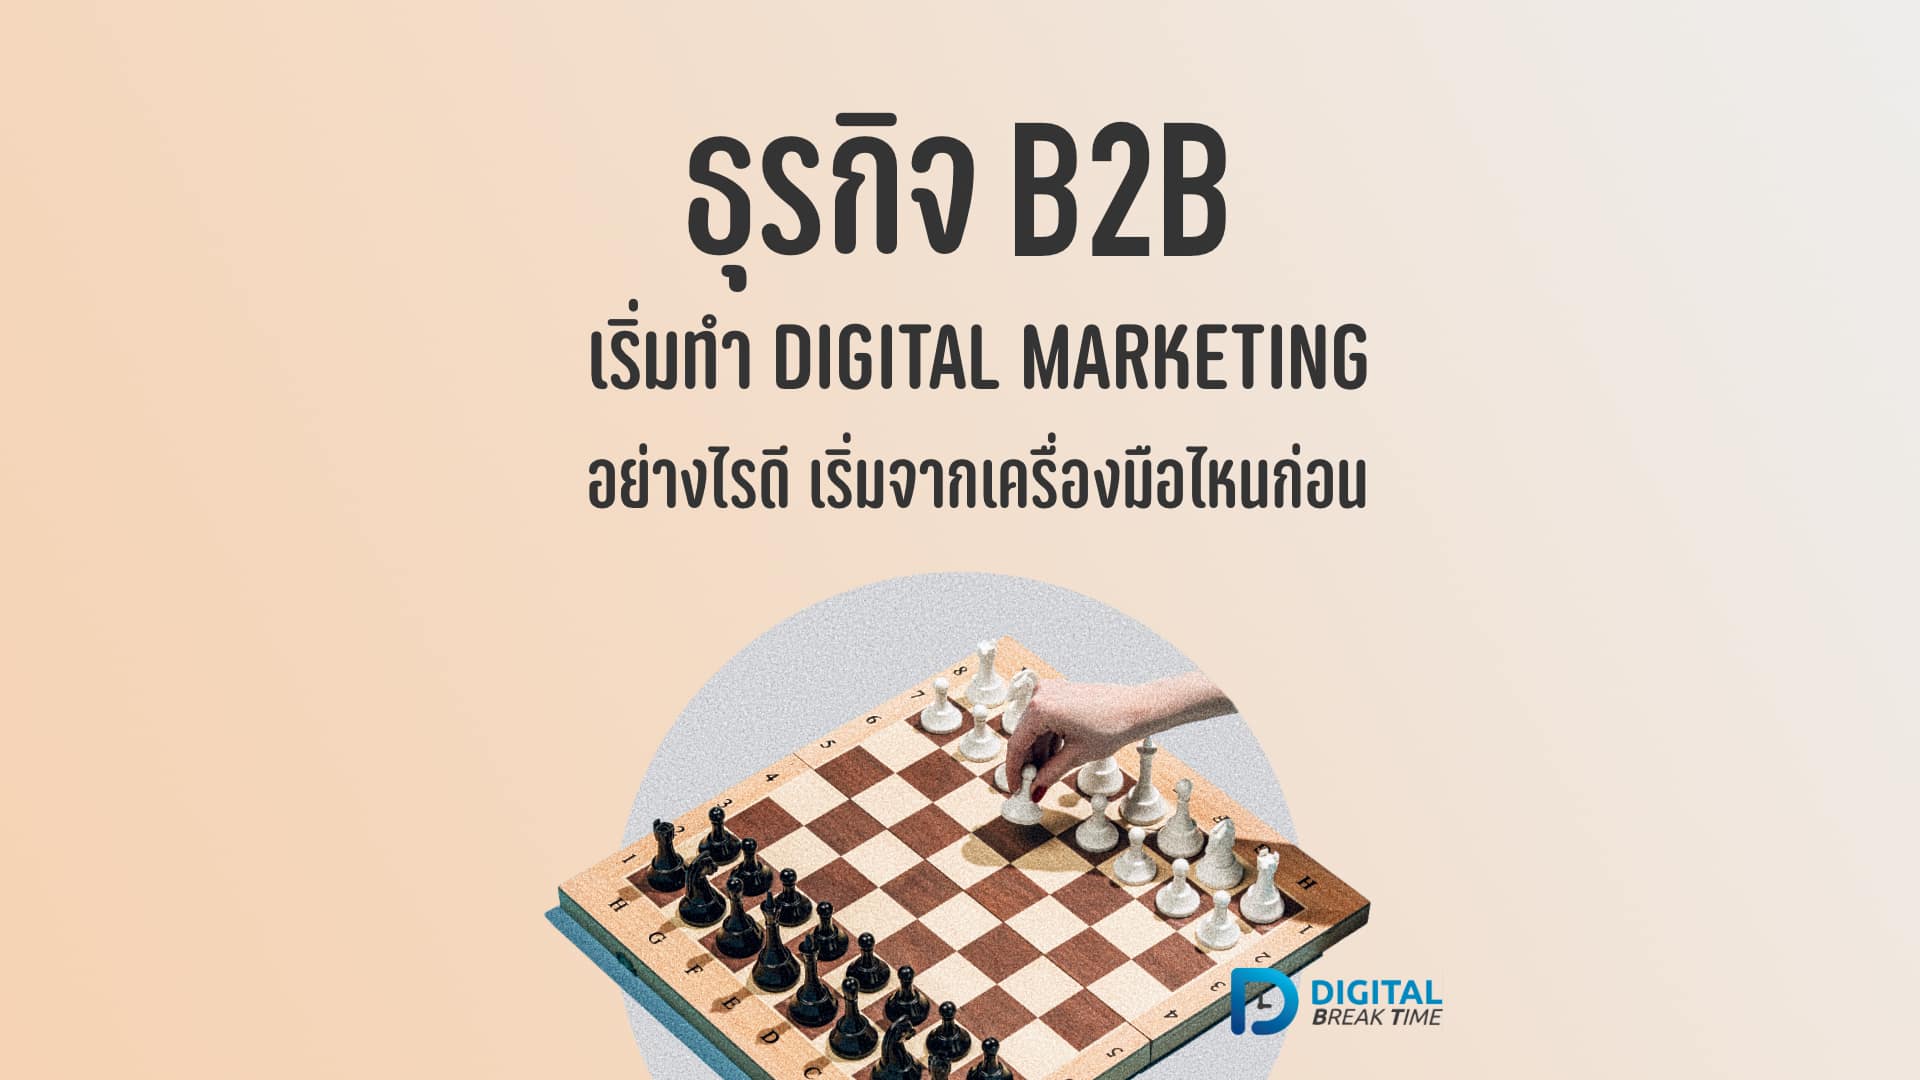 01-01 ธุรกิจ B2B จะเริ่มทำ Digital Marketing